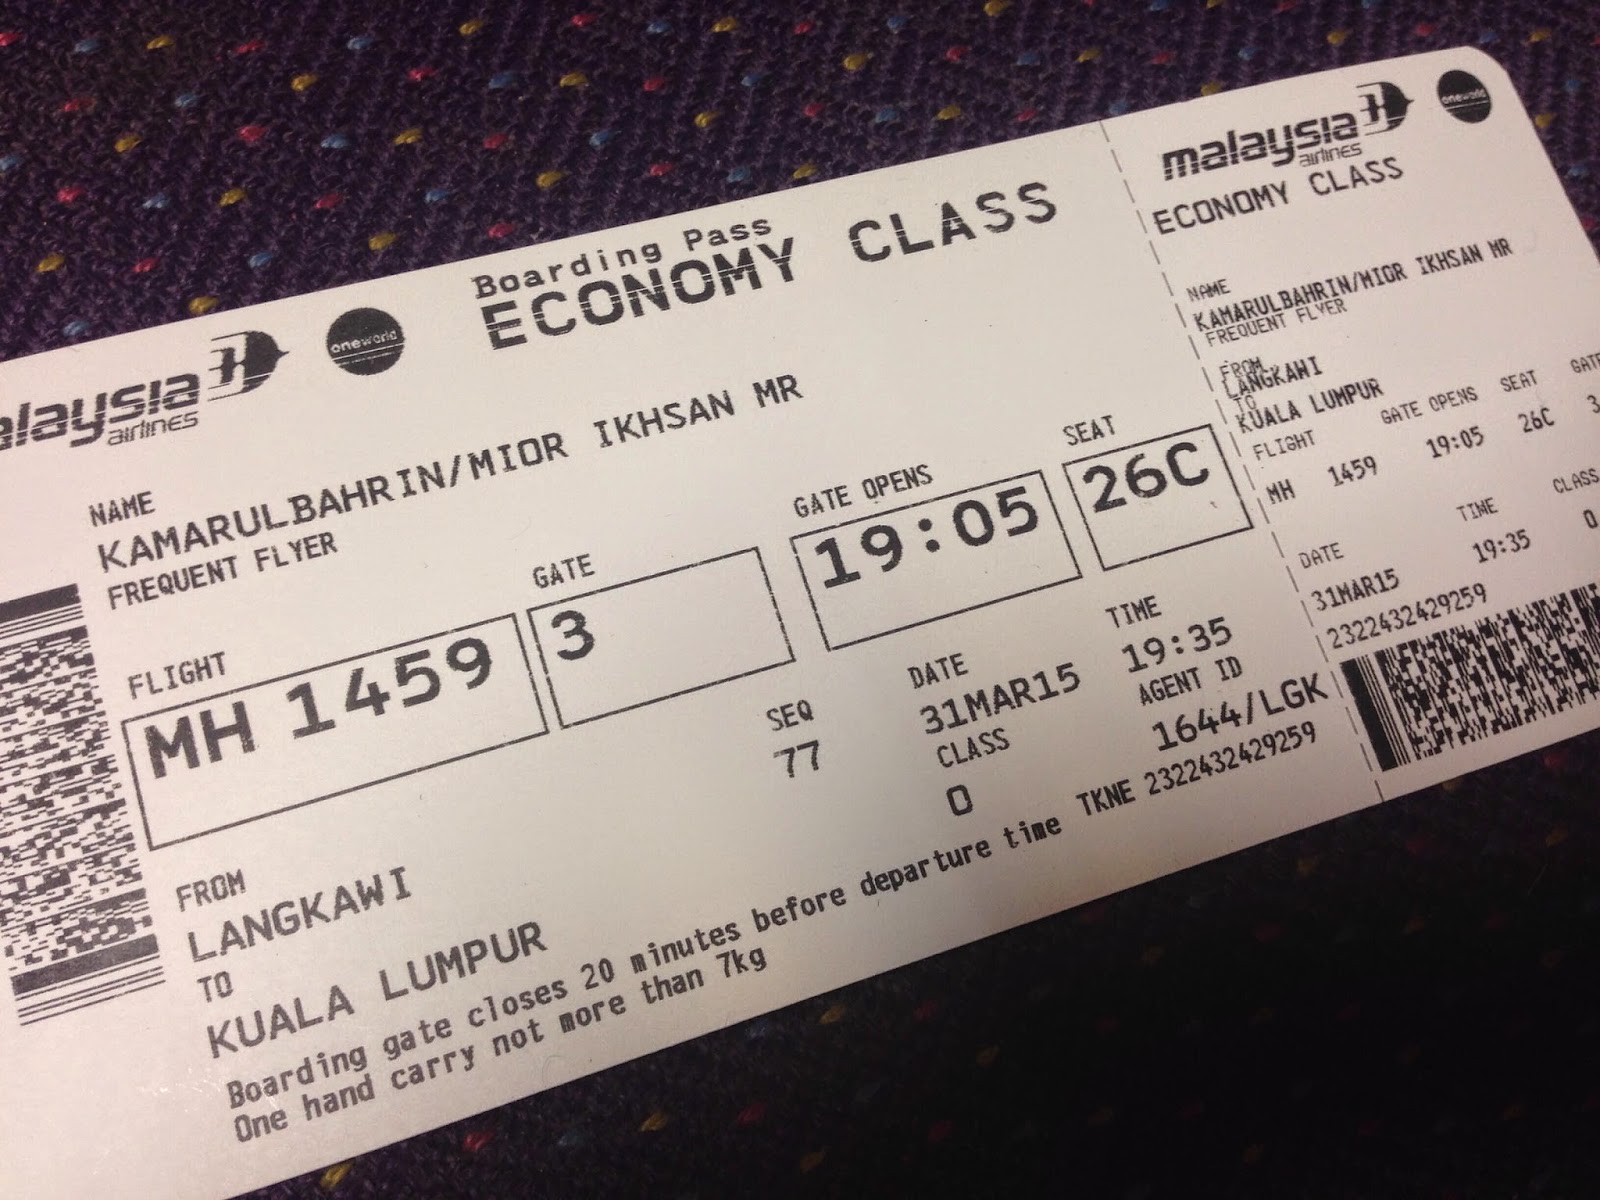 Air tiket asia langkawi Cheap Flights